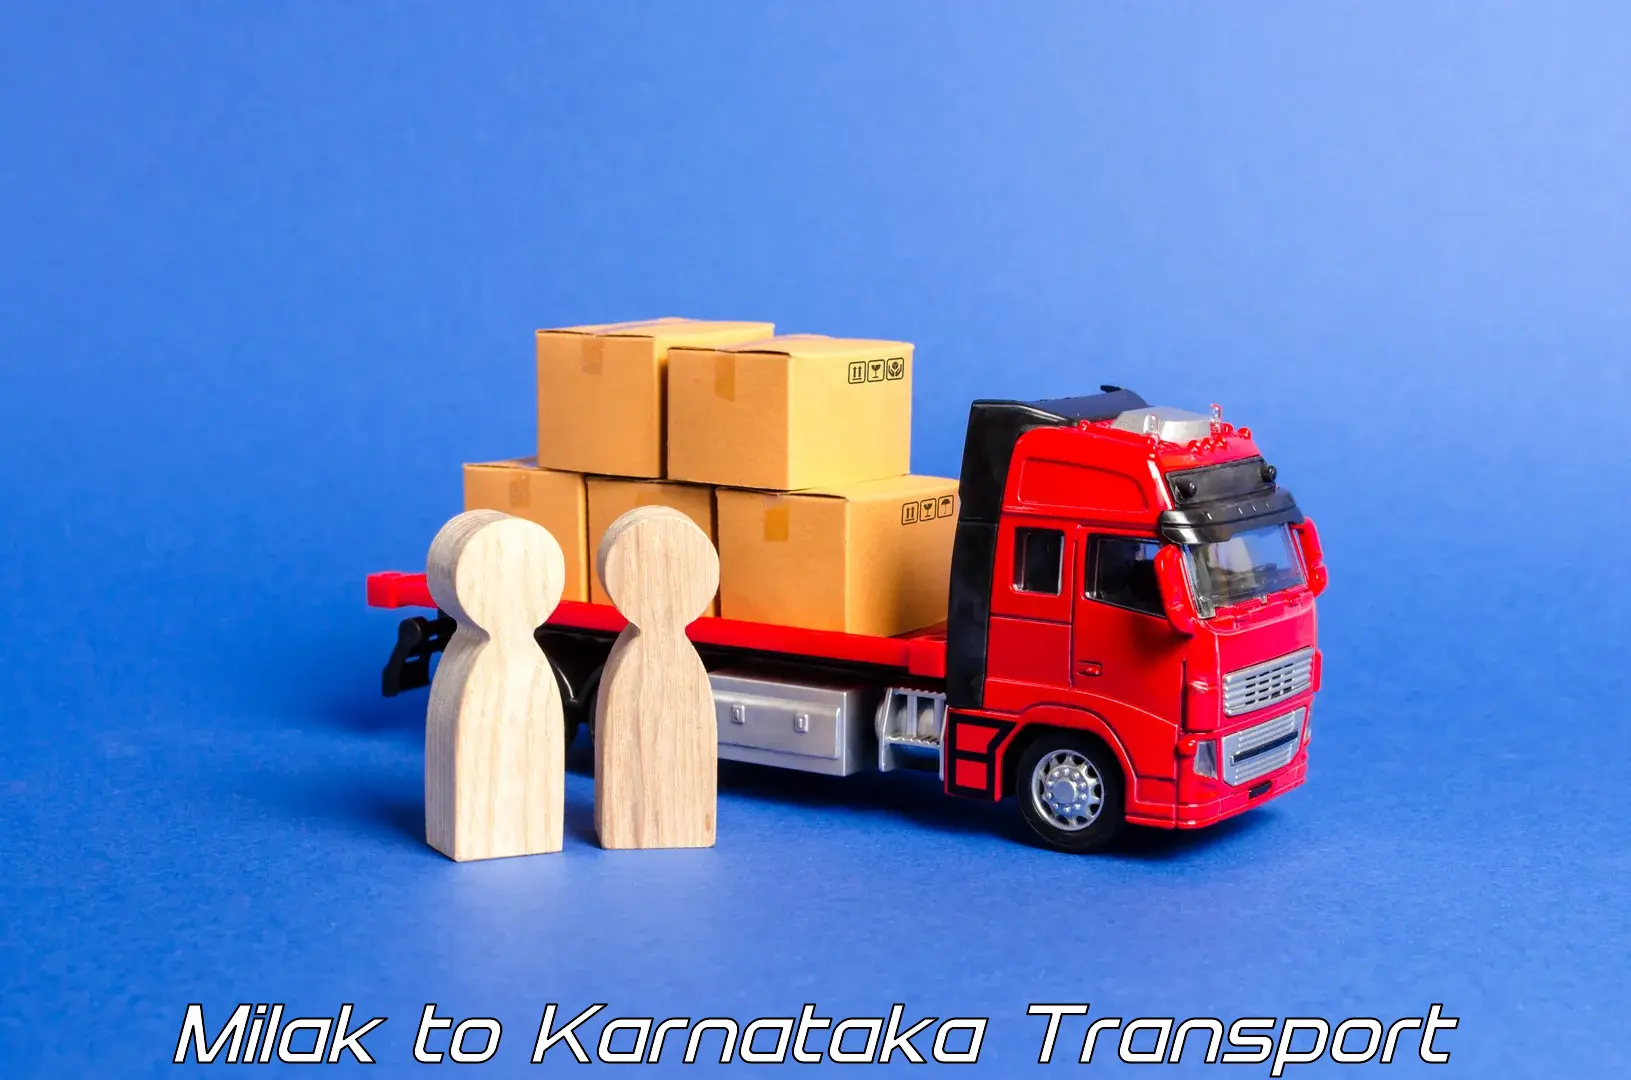 Interstate goods transport Milak to Aland Kalaburagi